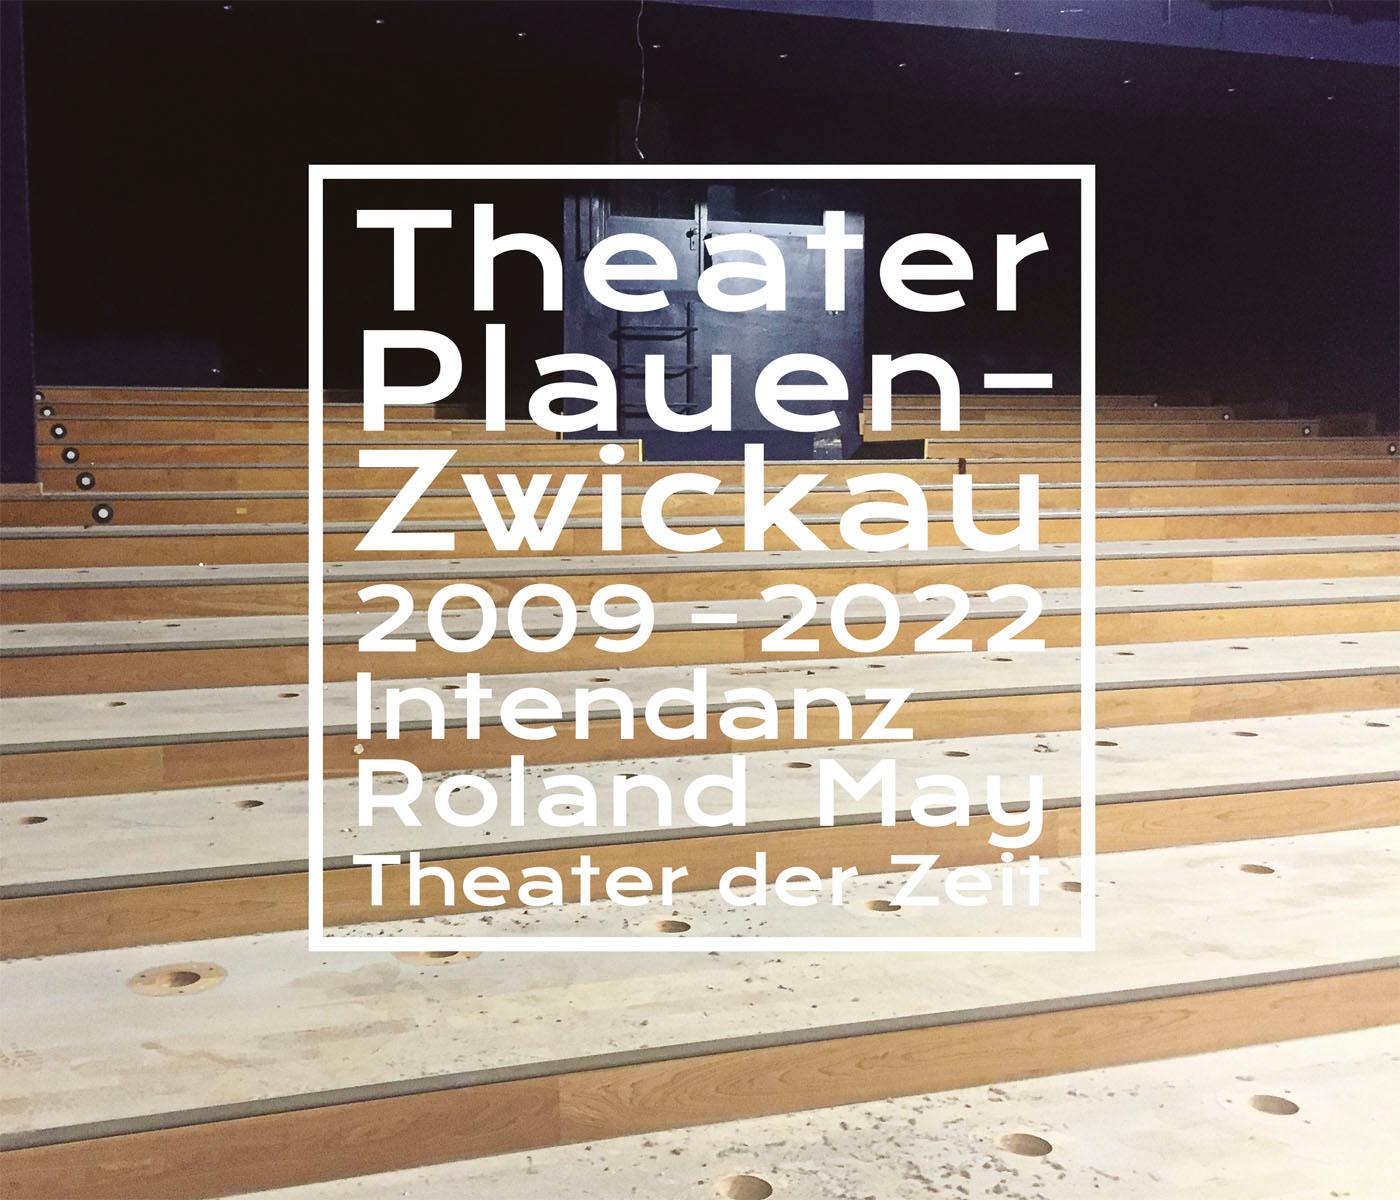 "Theater Plauen-Zwickau"